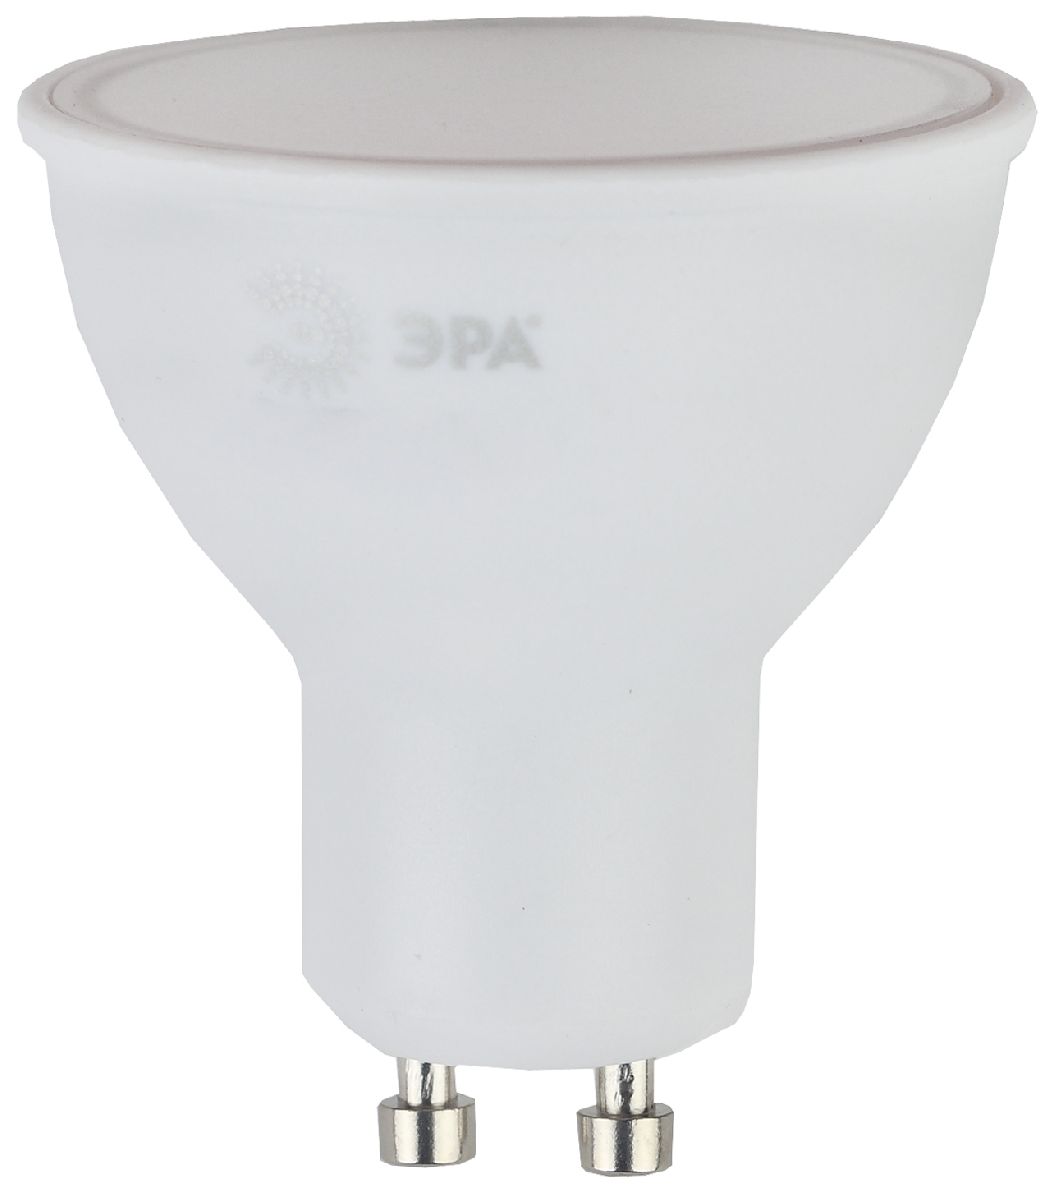 Лампа светодиодная Эра GU10 6W 4000K LED MR16-6W-840-GU10 Б0020544